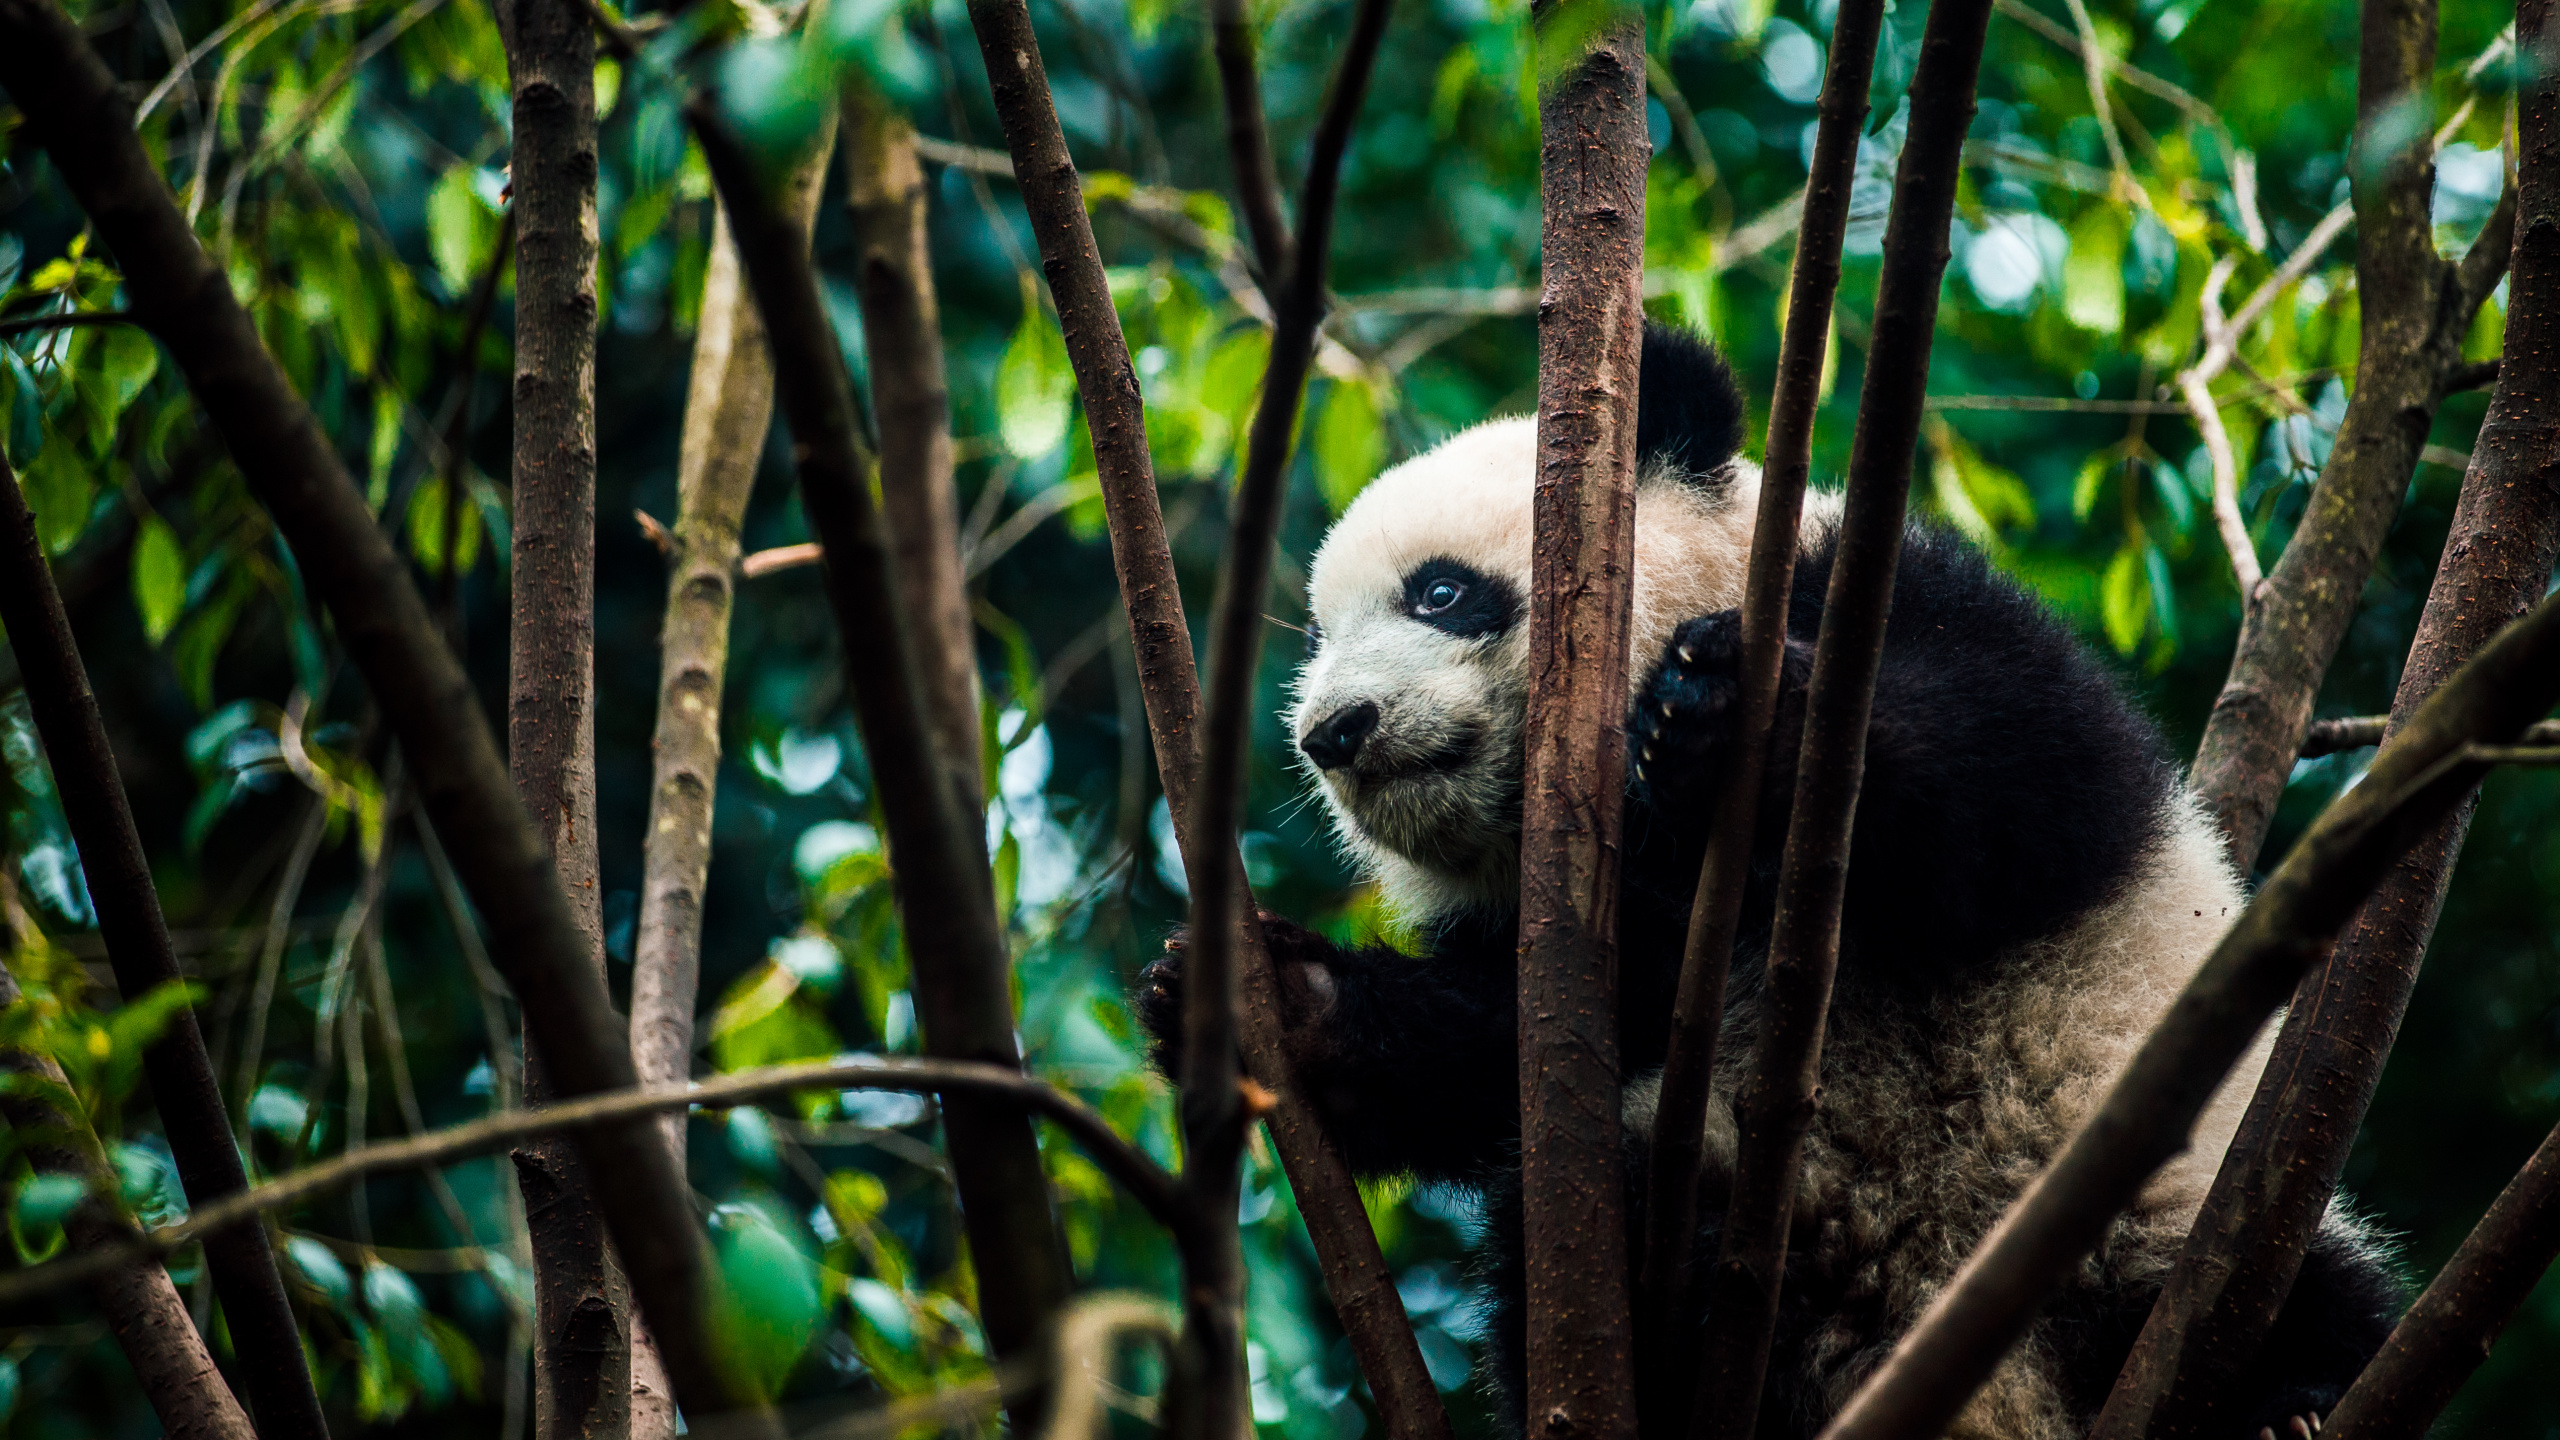 大熊猫, 自然保护区, 丛林, 陆地动物, 野生动物 壁纸 2560x1440 允许